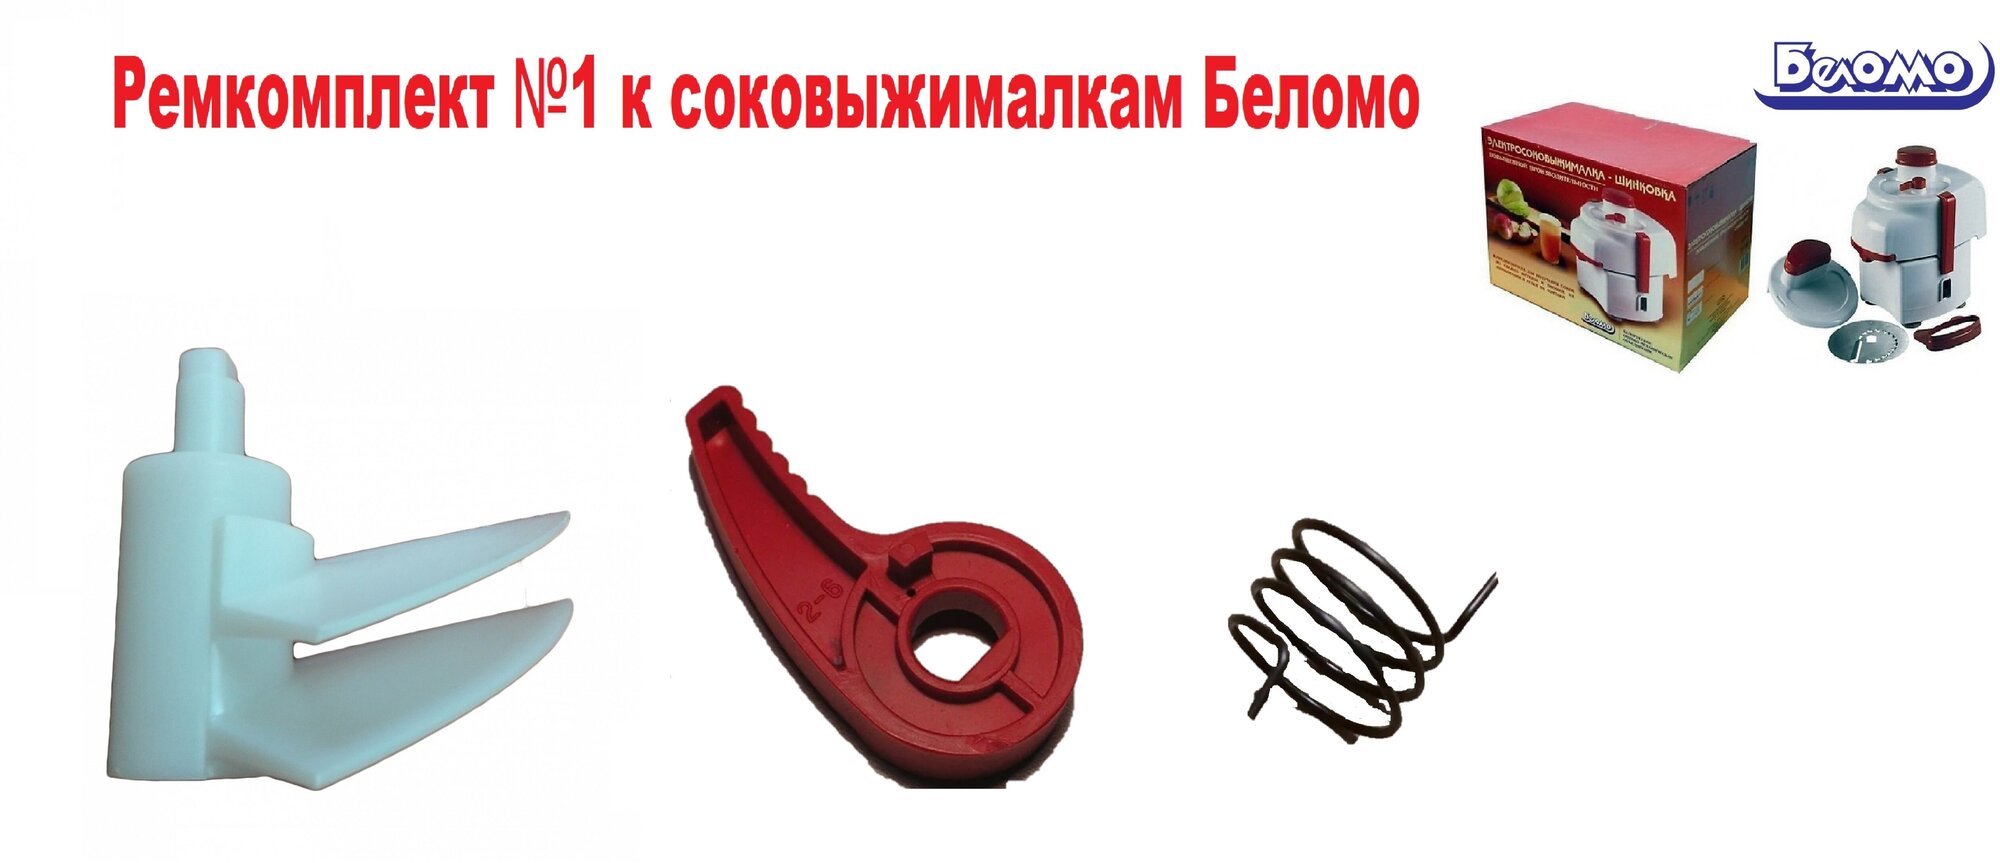 Ремкомплект №1 к Соковыжималке Беломо СВПП-301/СВШПП-302 (выбрасыватель, пружина, ручка)